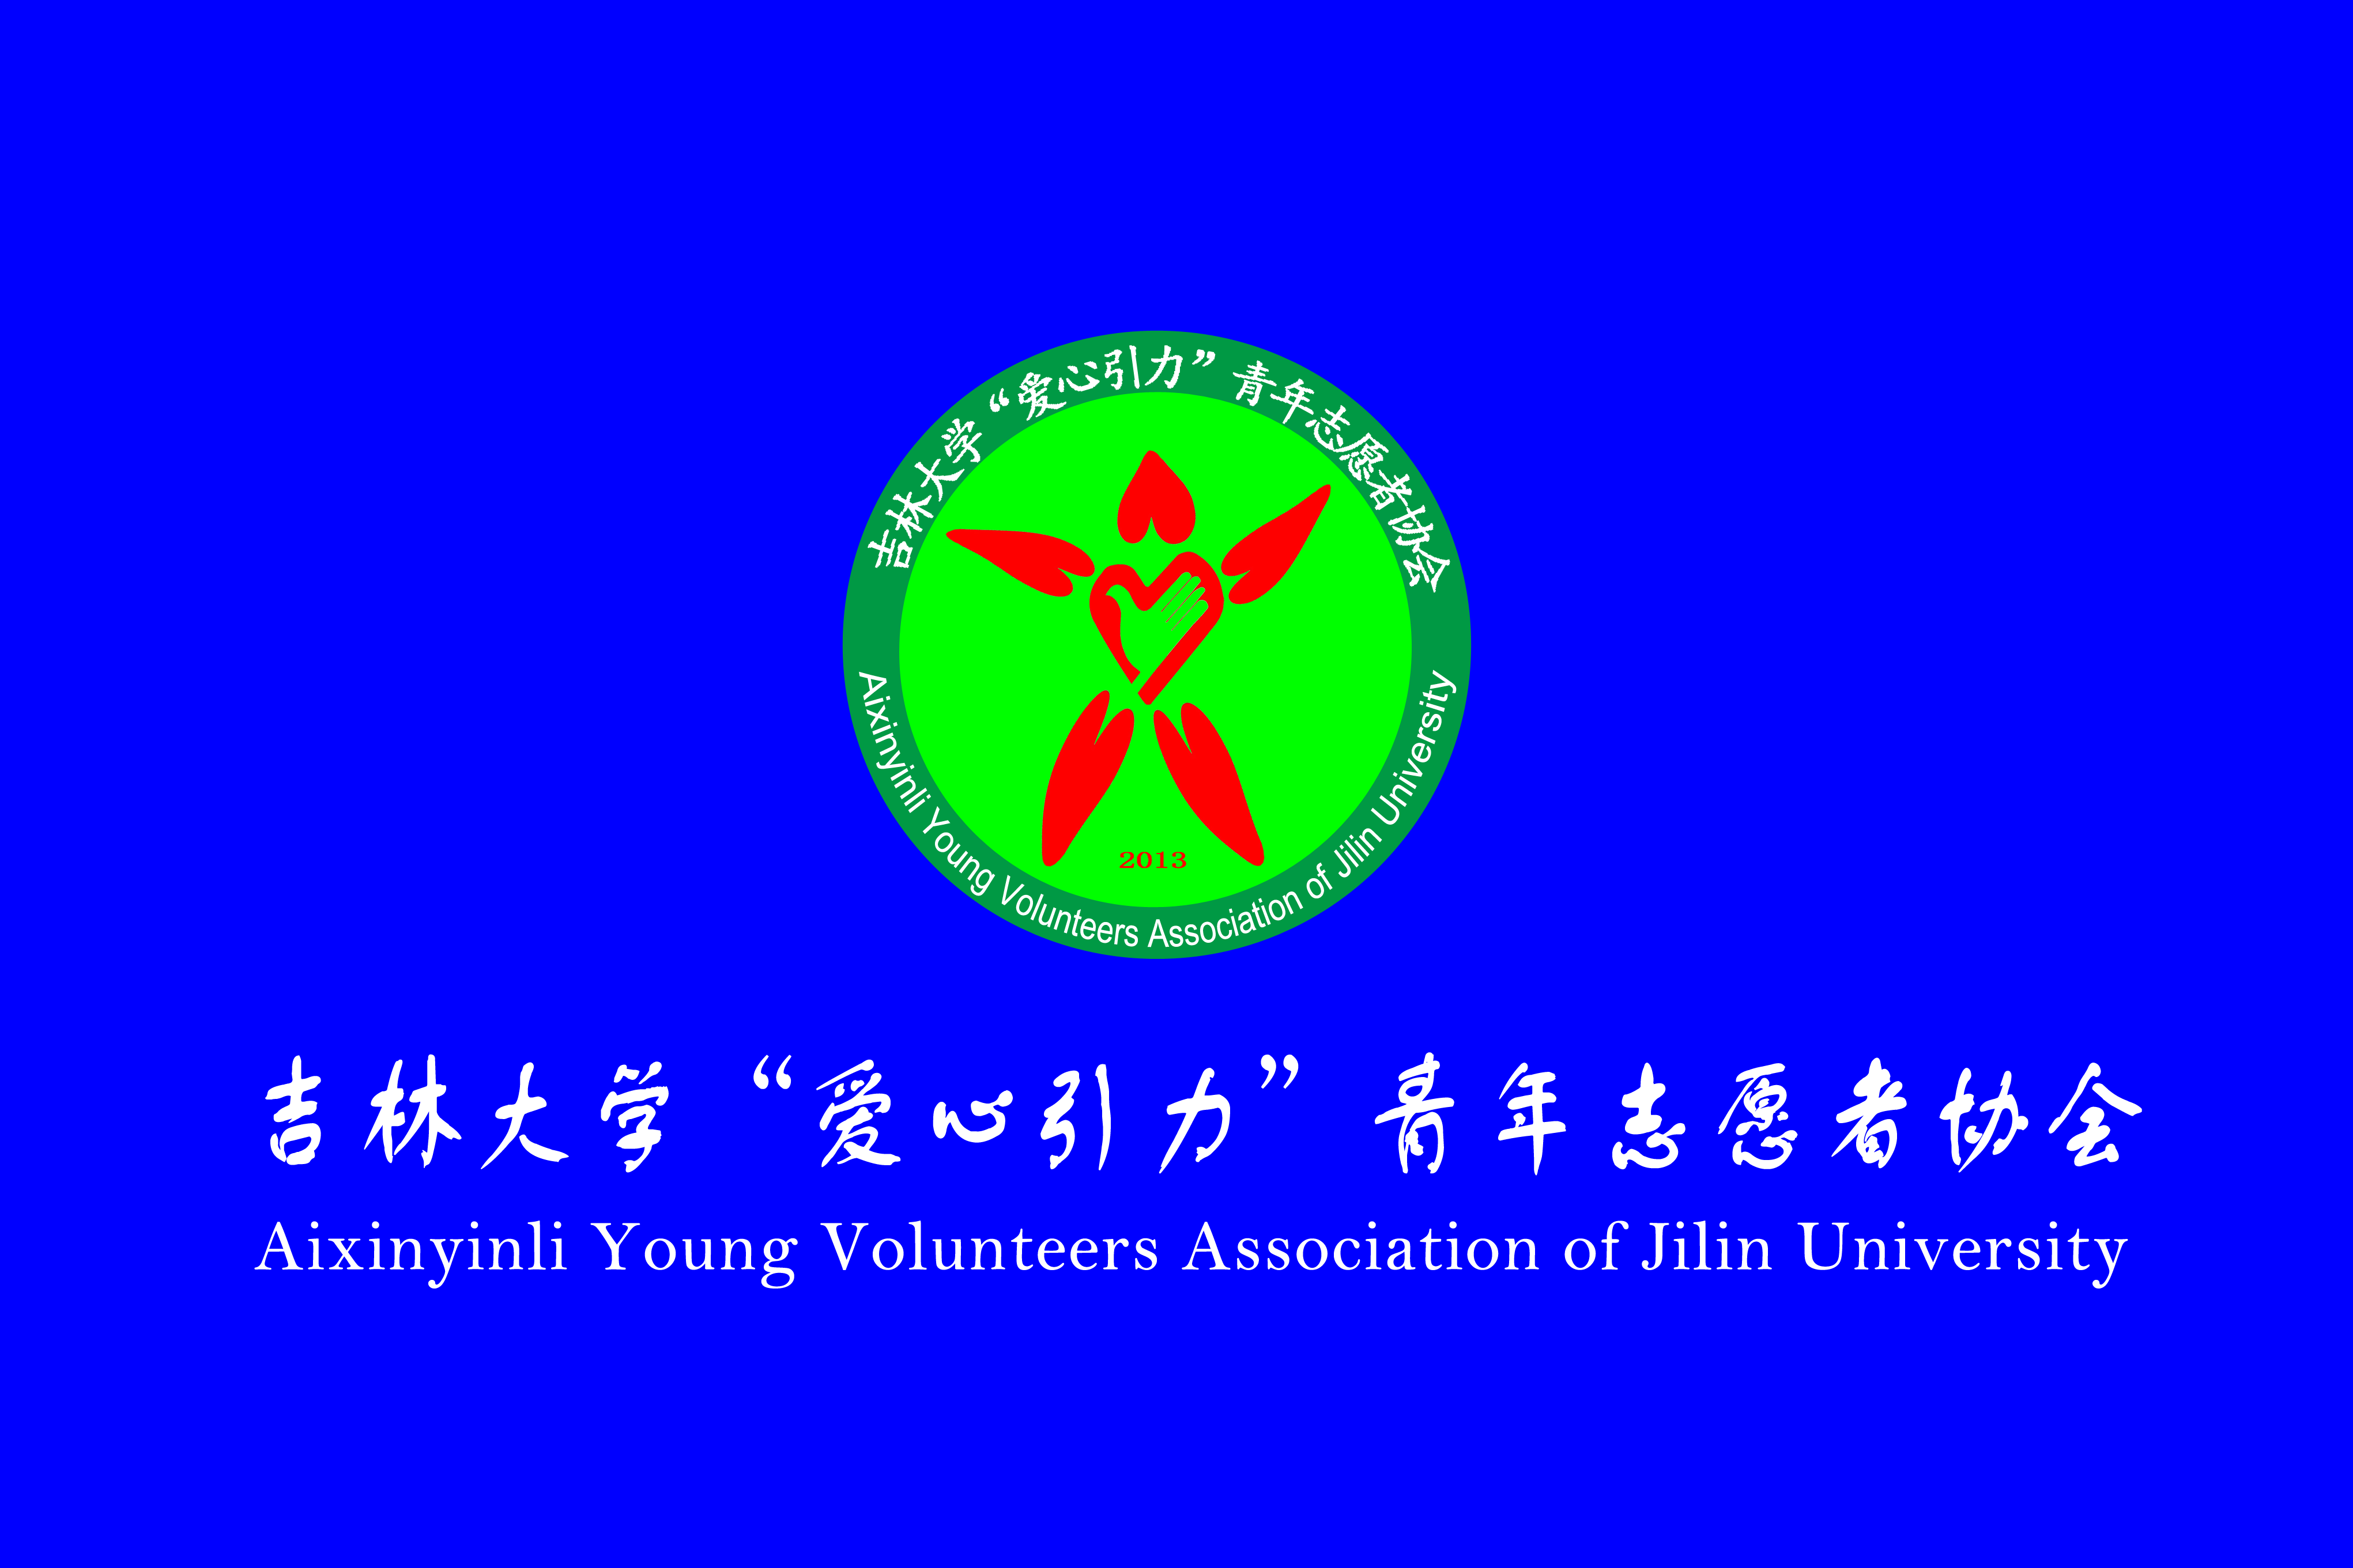 吉林大學“愛心引力”青年志願者協會